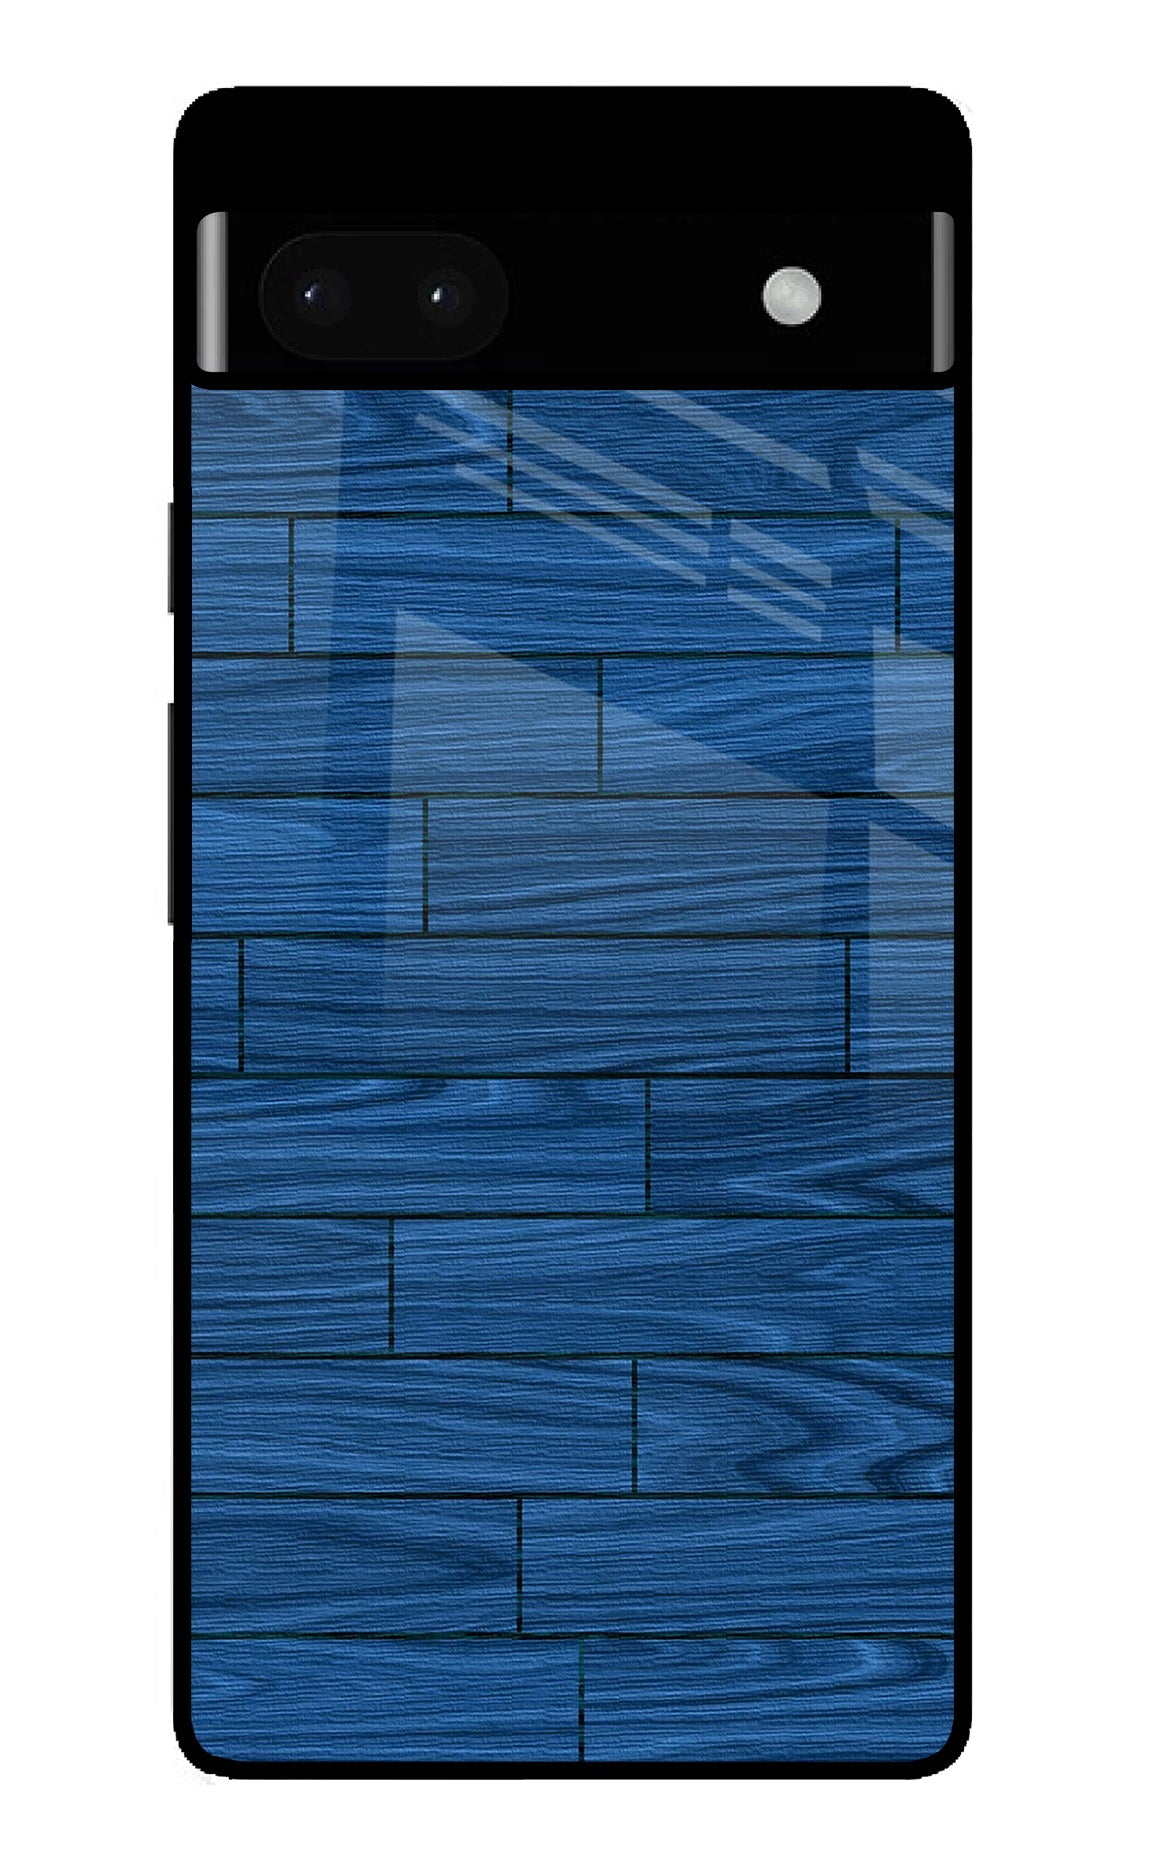 Wooden Texture Google Pixel 6A Glass Case